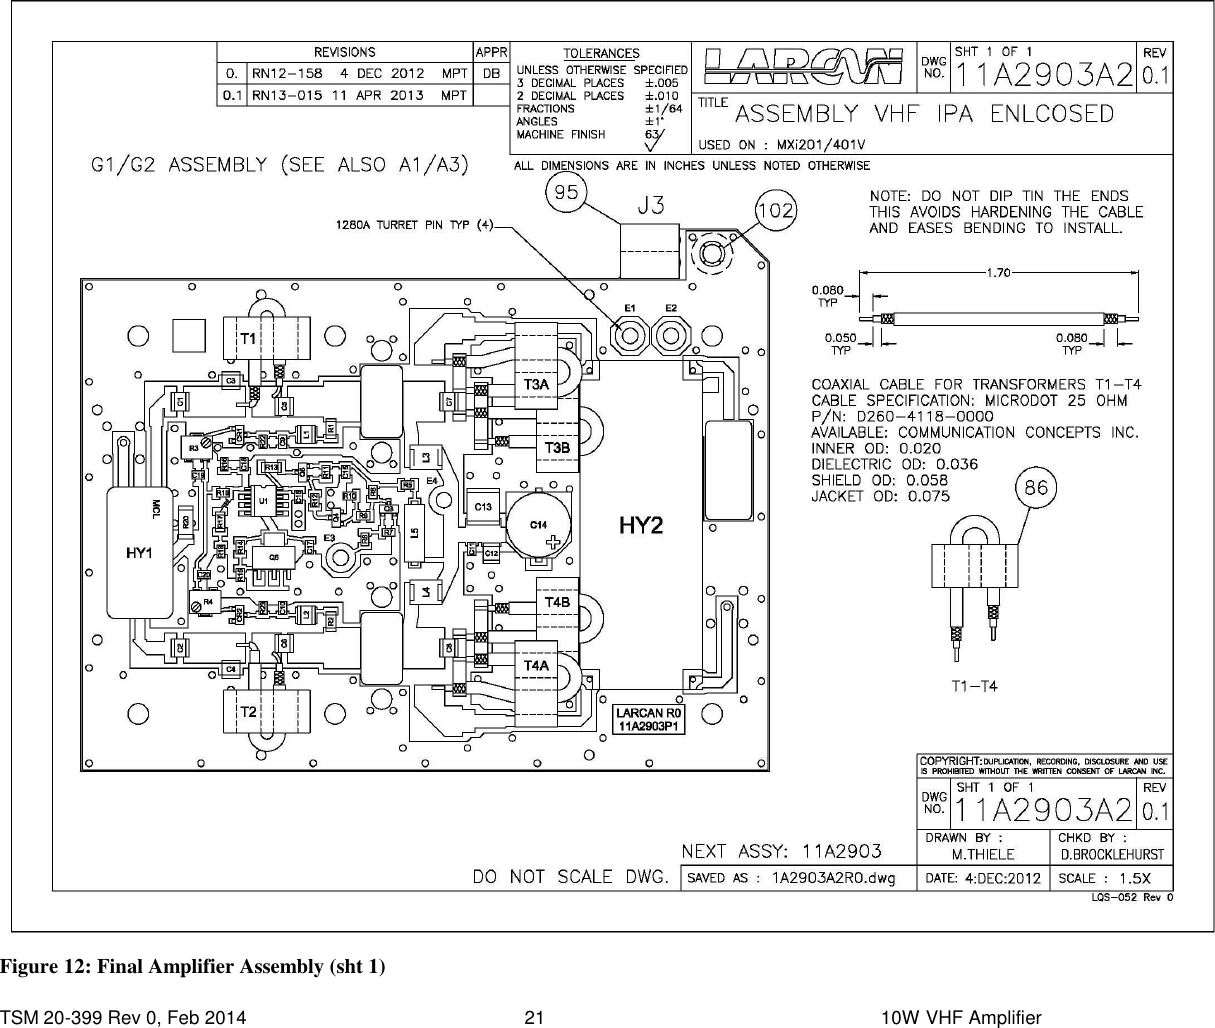  TSM 20-399 Rev 0, Feb 2014  21    10W VHF Amplifier  Figure 12: Final Amplifier Assembly (sht 1) 